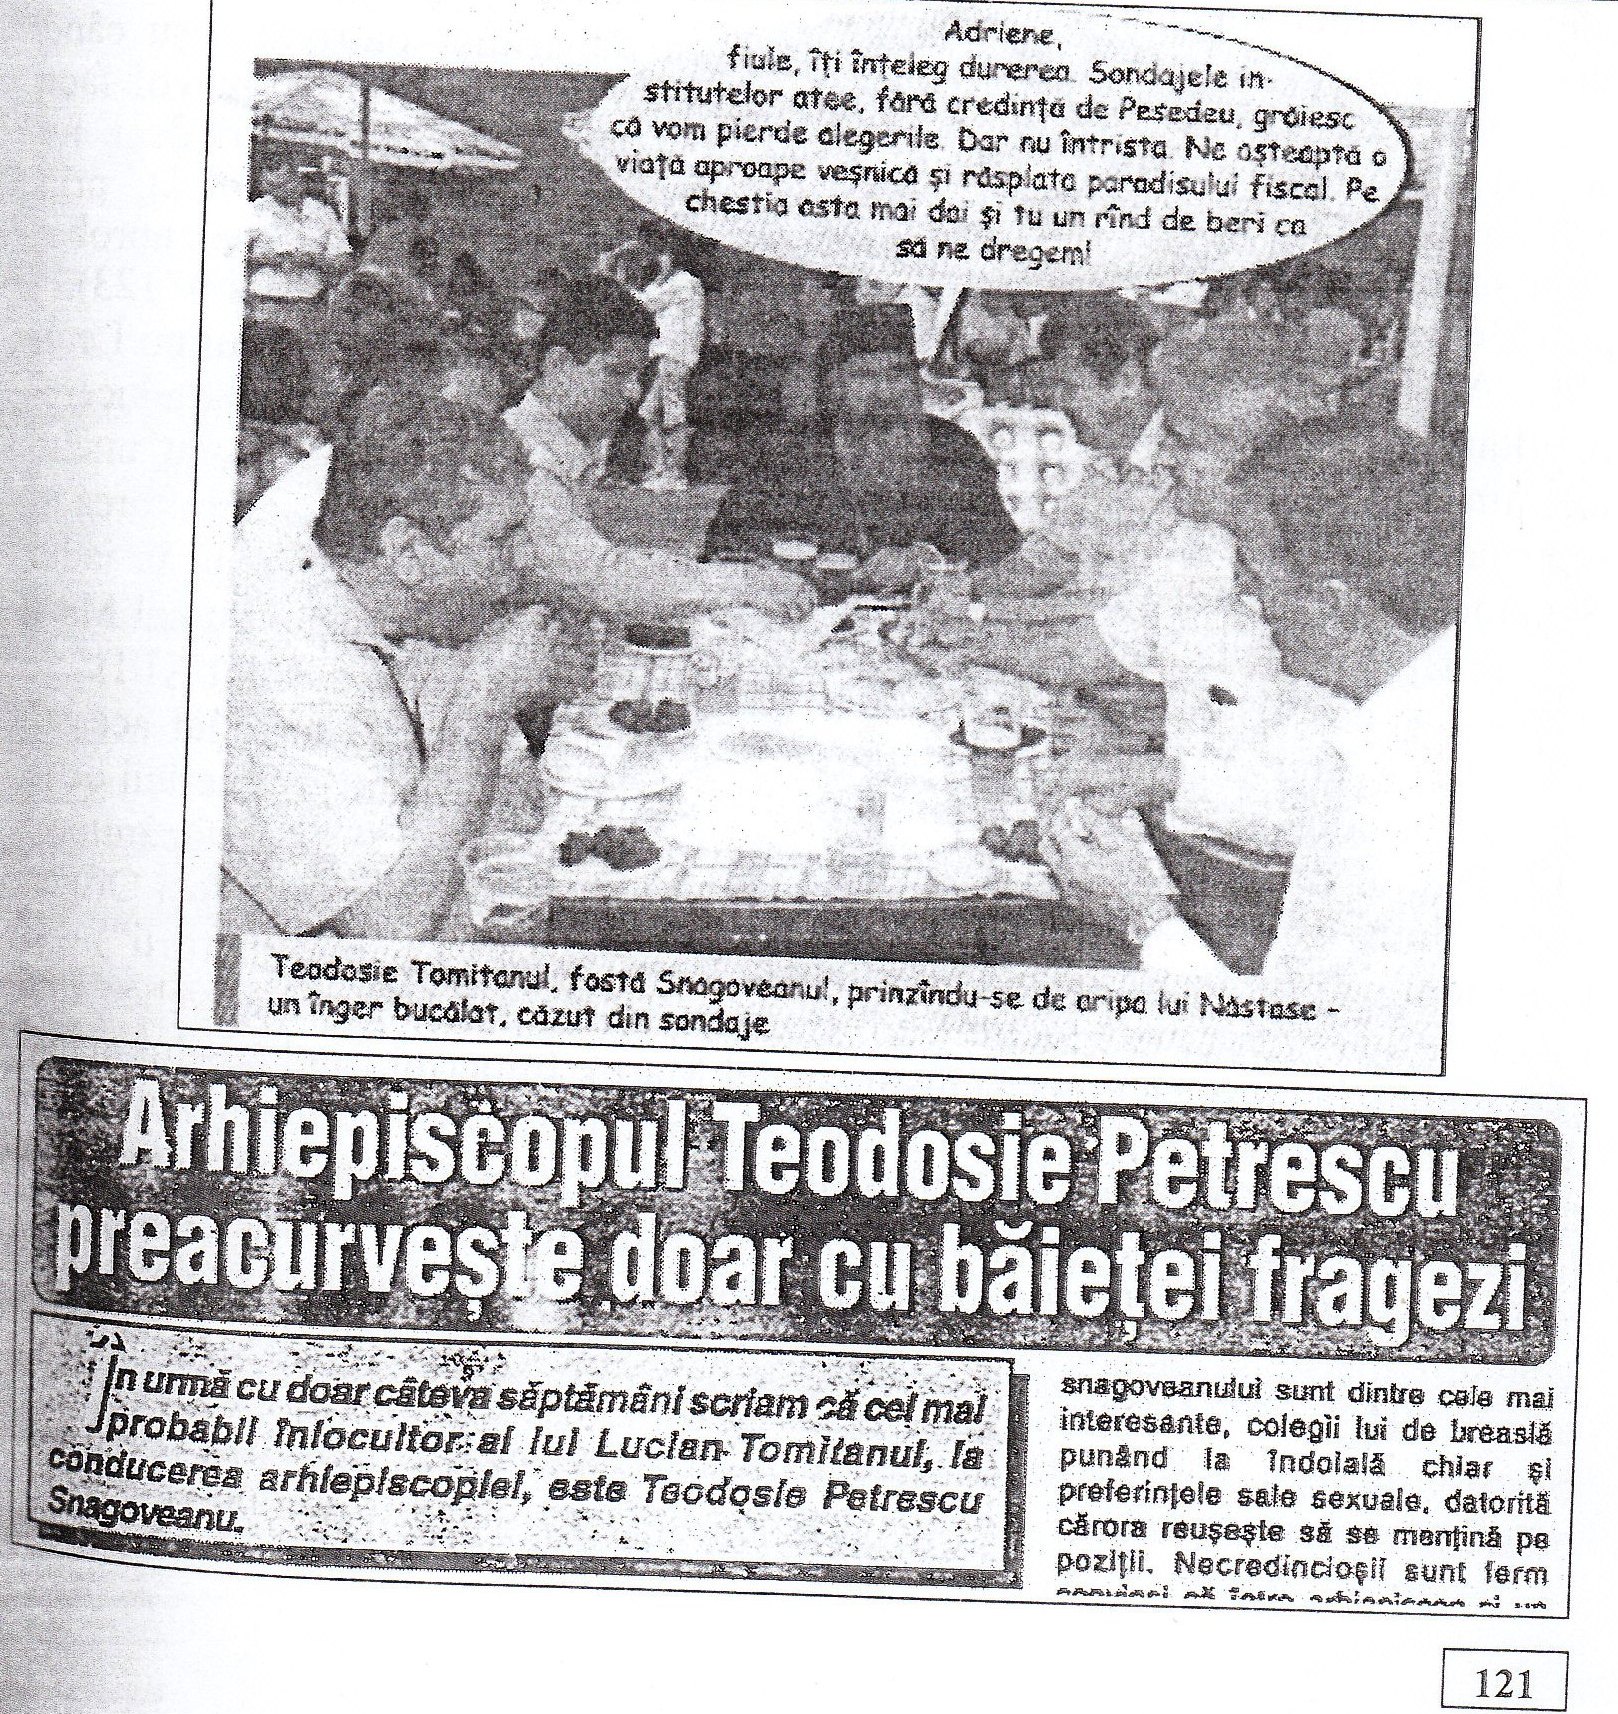 Pag. 121 din cartea "Rugați-vă pentru fratele Teoctist", apărută la editura C.N.I. "Coresi" S.A. București, 2005.